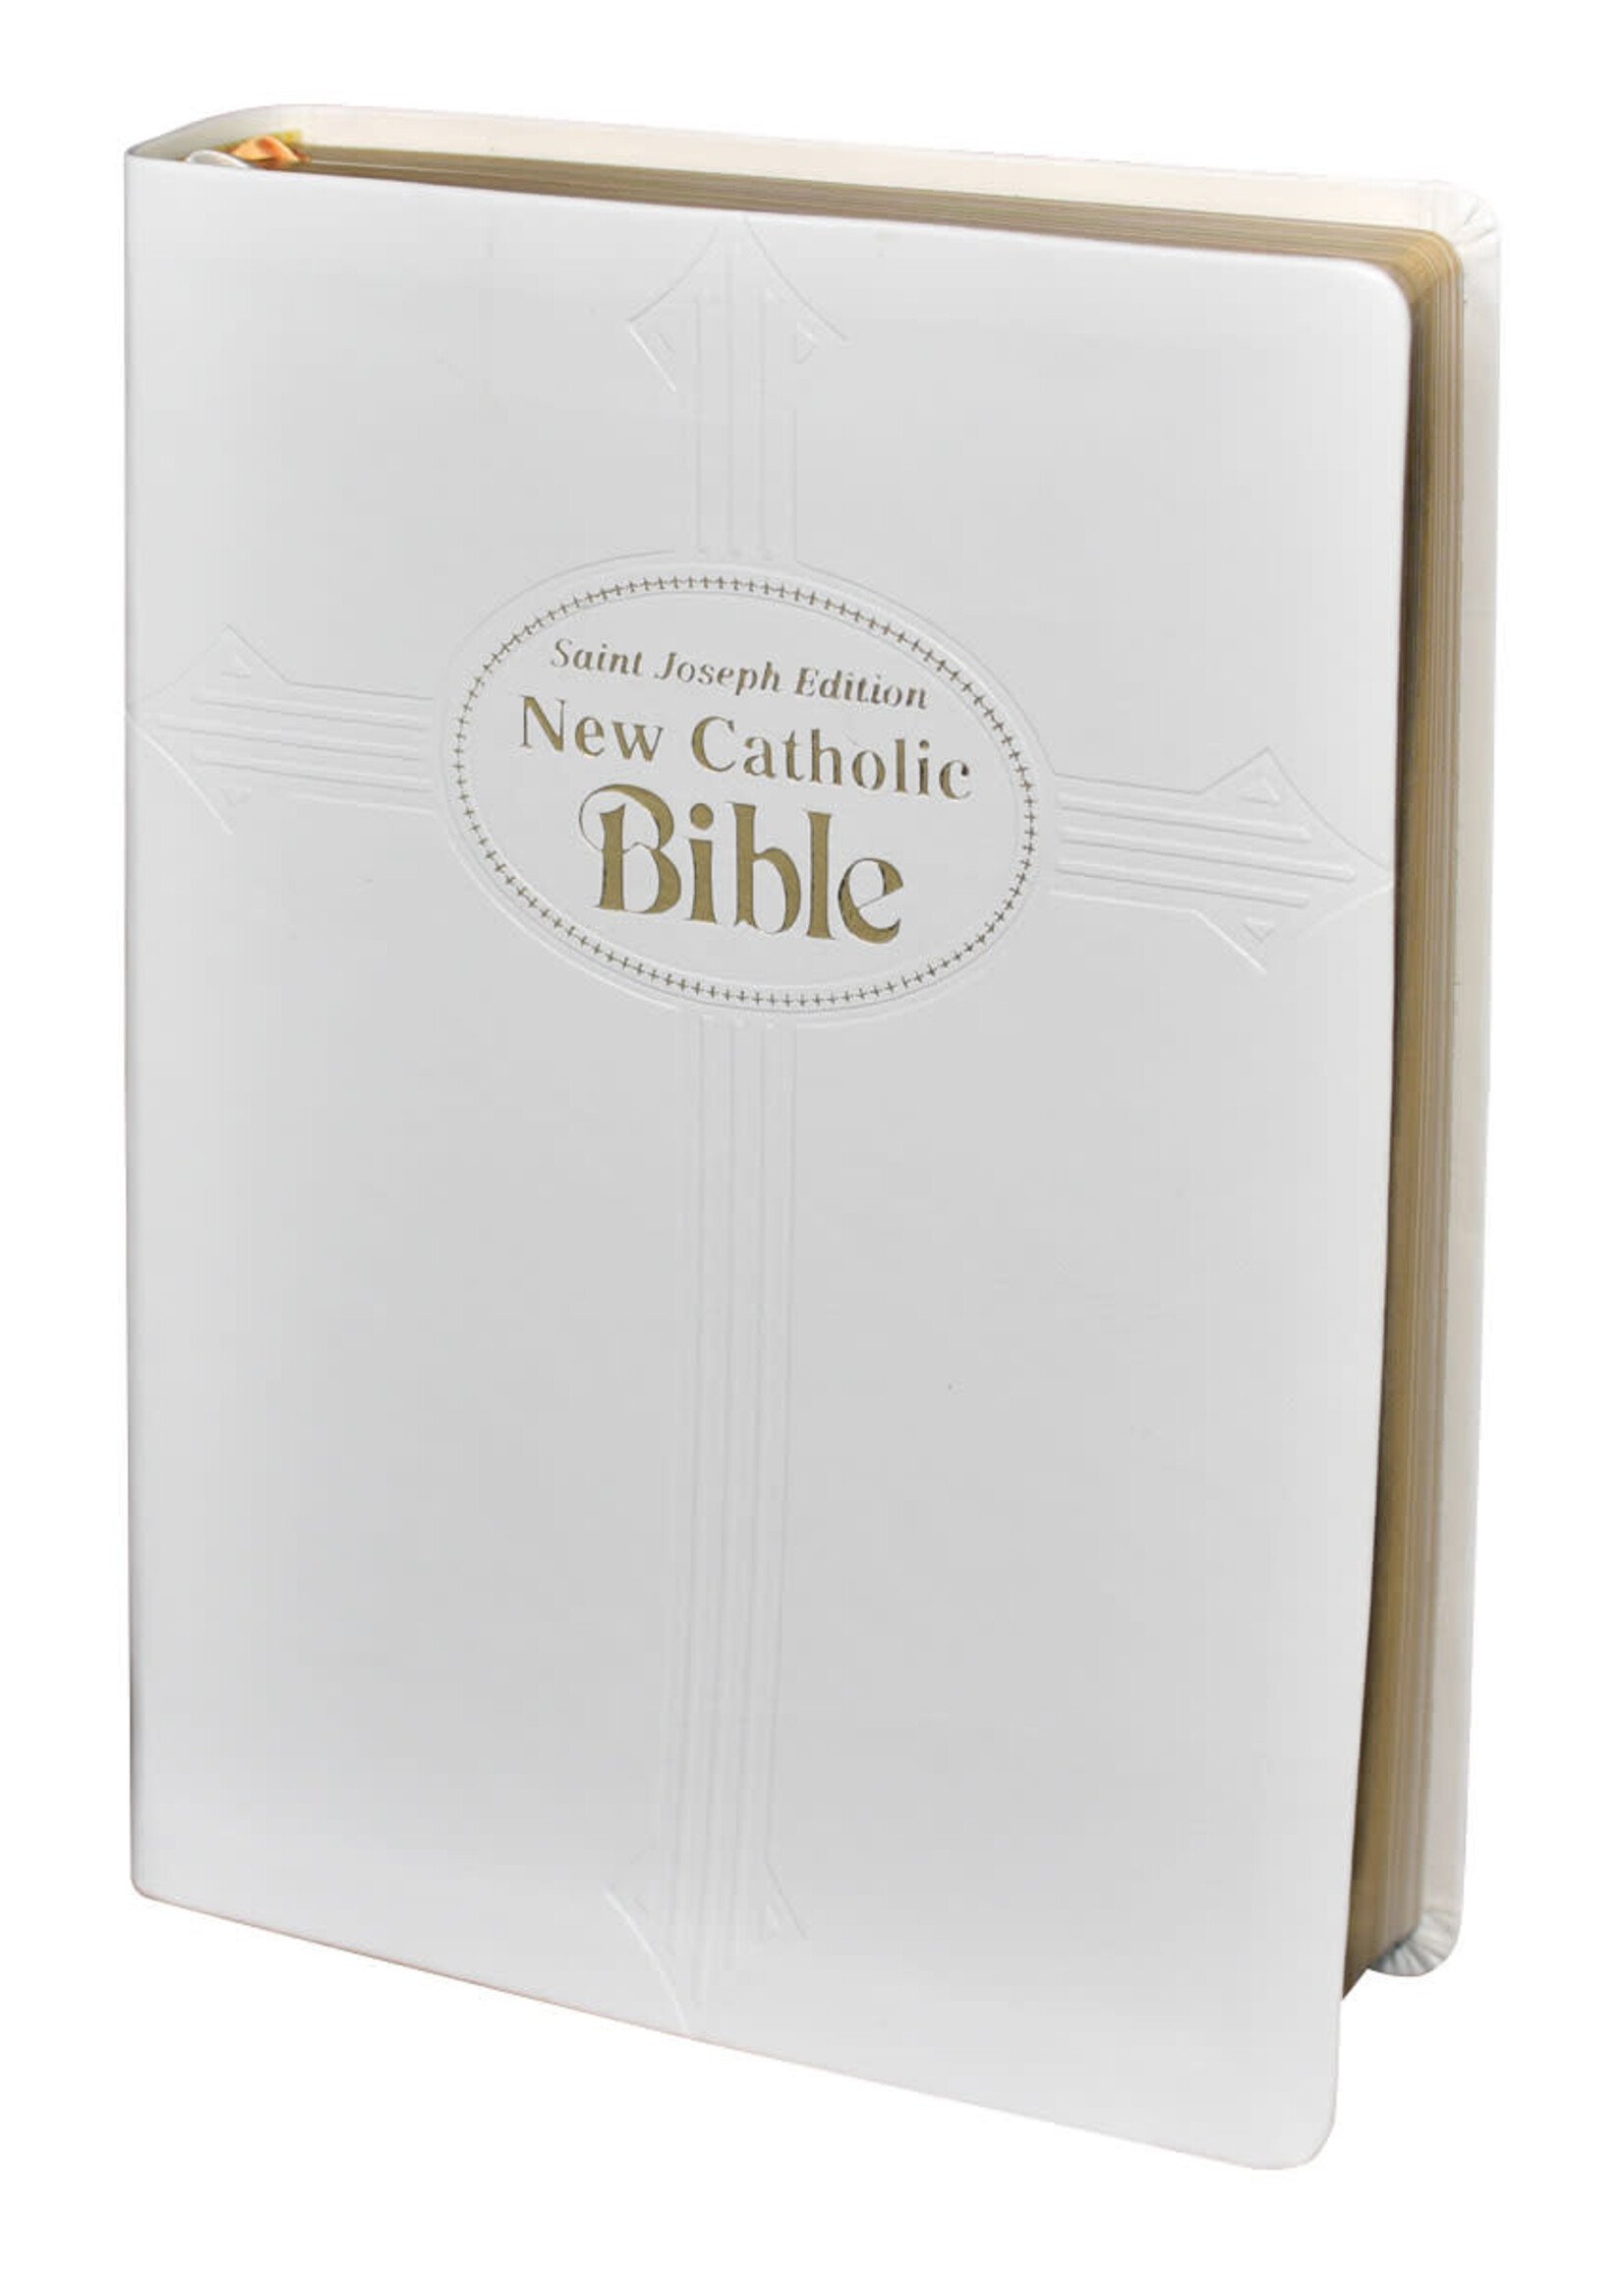 St Joseph New Catholic Bible (Gift Edition - Large Type)